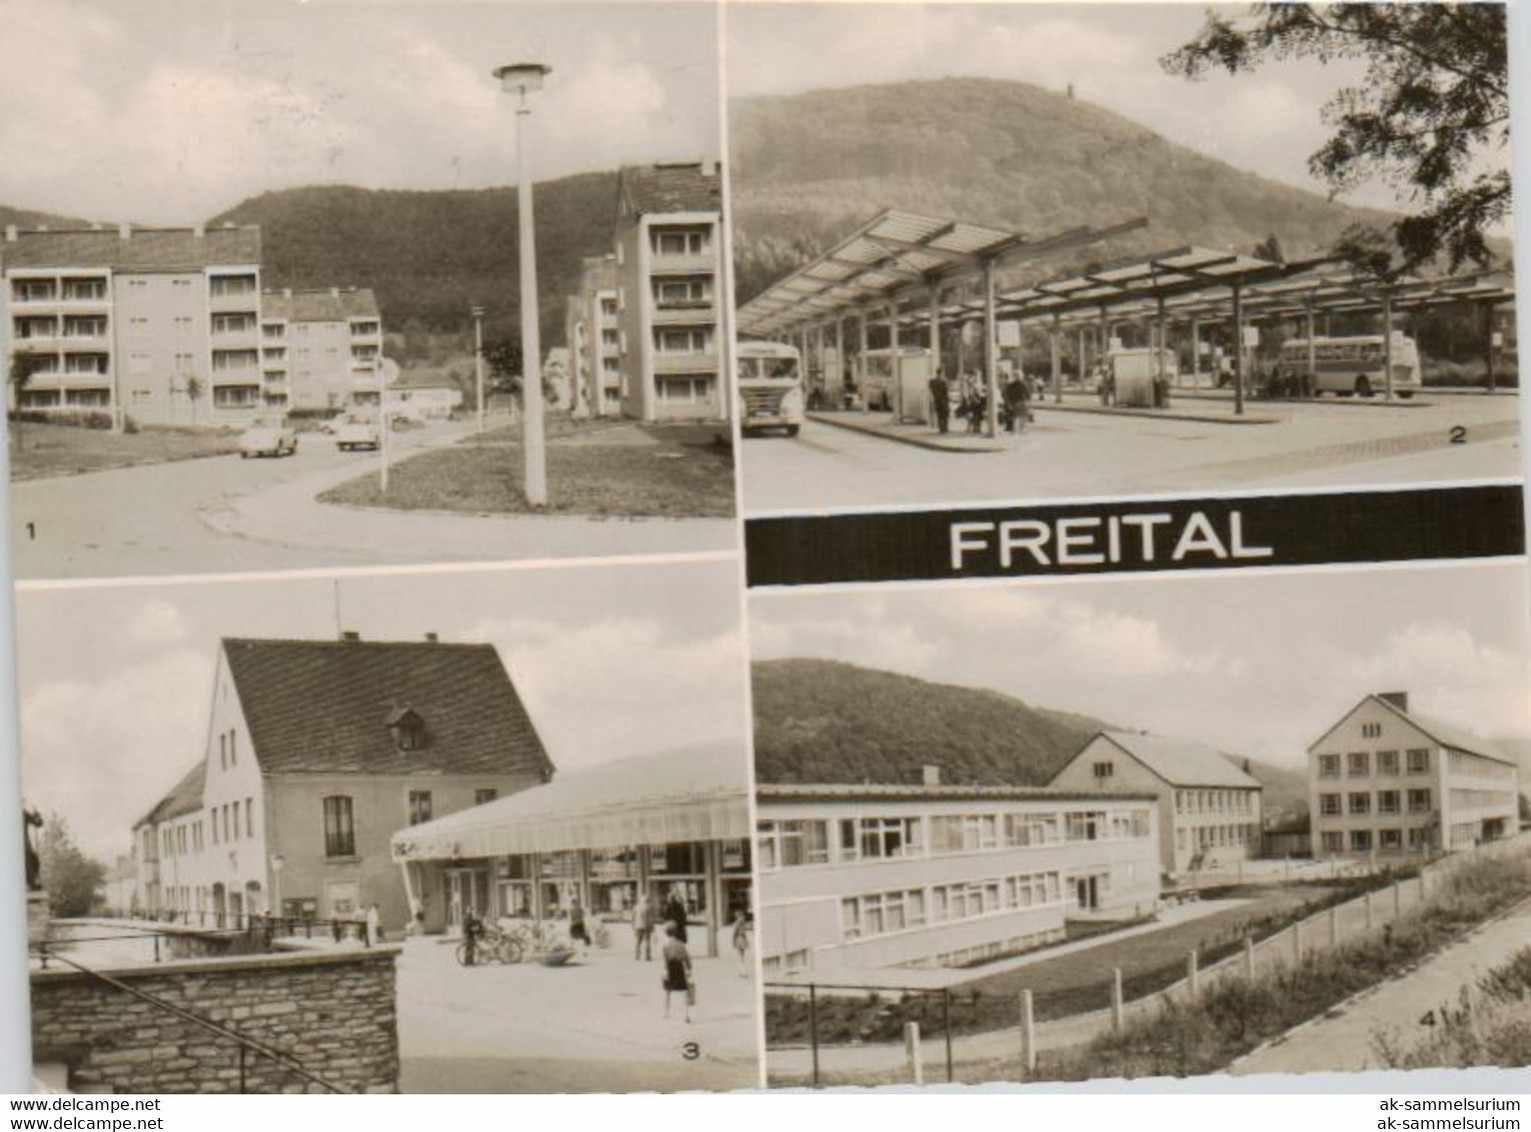 Freital (D-A374) - Freital